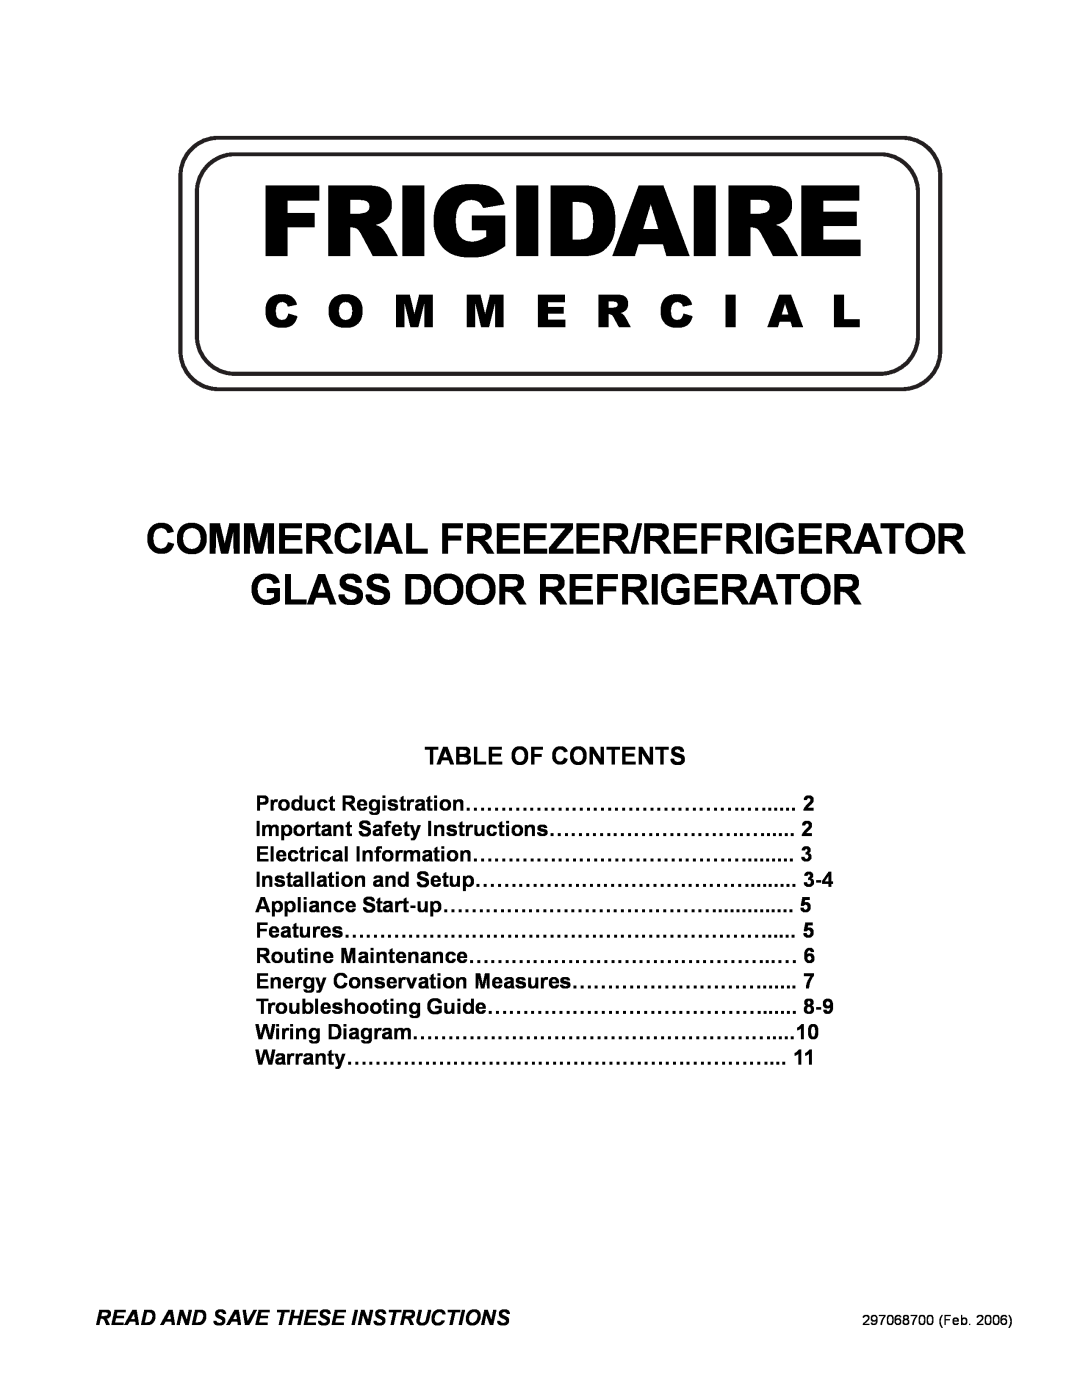 Frigidaire FREEZER/REFRIGERATOR GLASS DOOR REFRIGERATOR important safety instructions Frigidaire, C O M M E R C I A L 